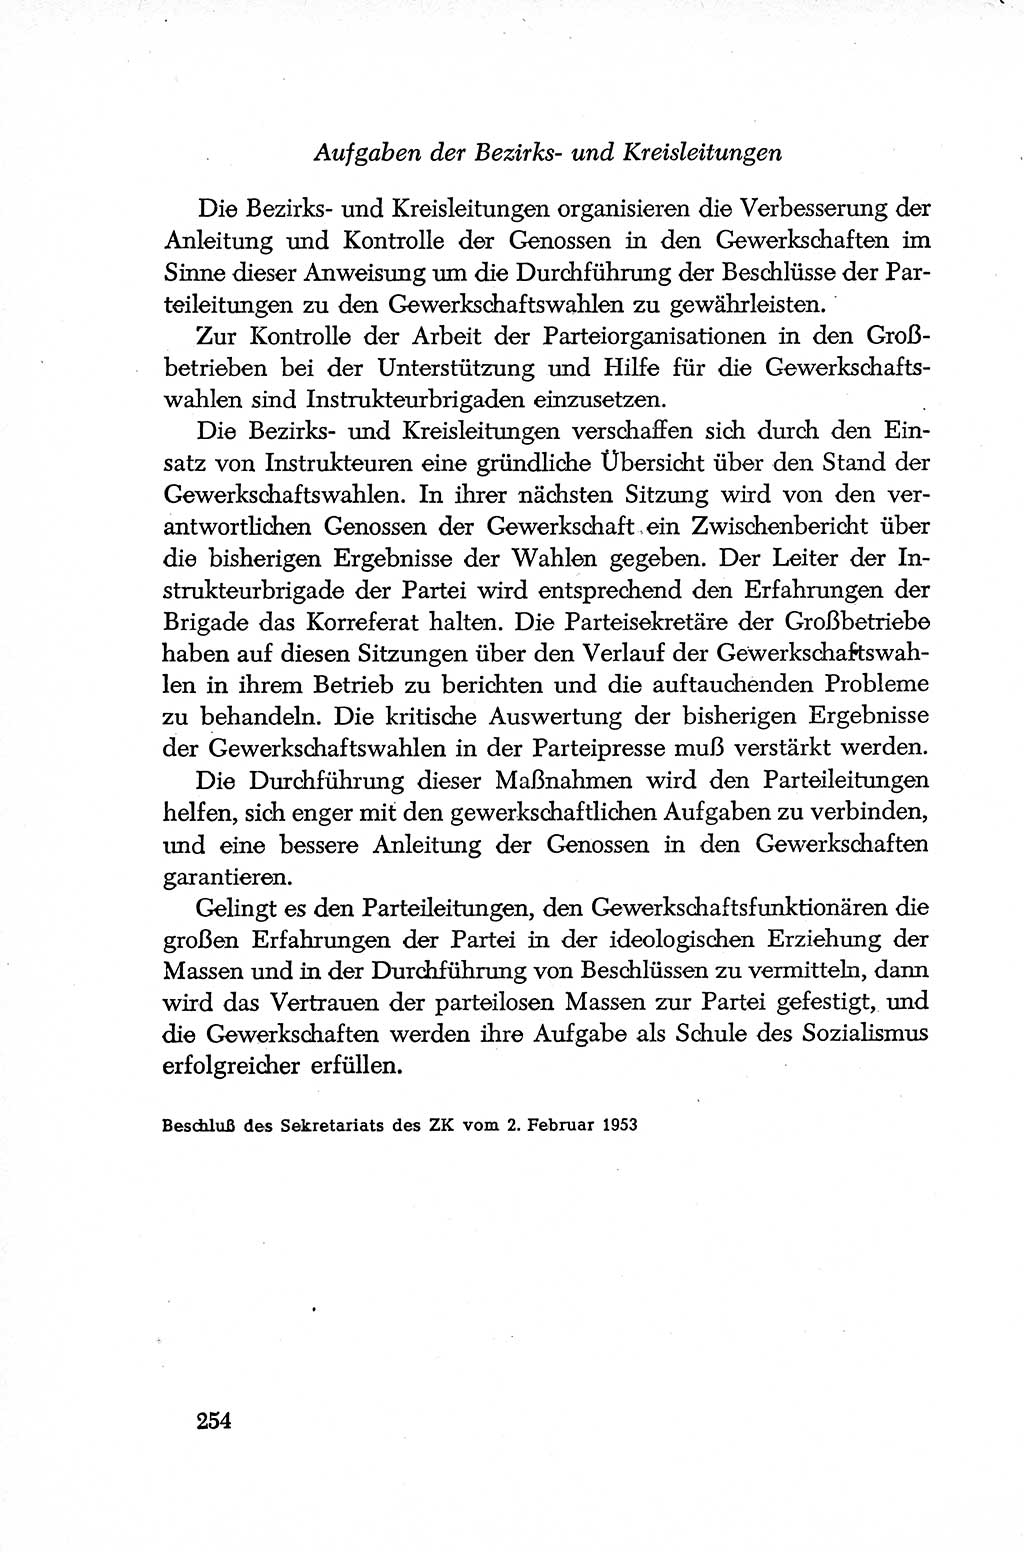 Dokumente der Sozialistischen Einheitspartei Deutschlands (SED) [Deutsche Demokratische Republik (DDR)] 1952-1953, Seite 254 (Dok. SED DDR 1952-1953, S. 254)